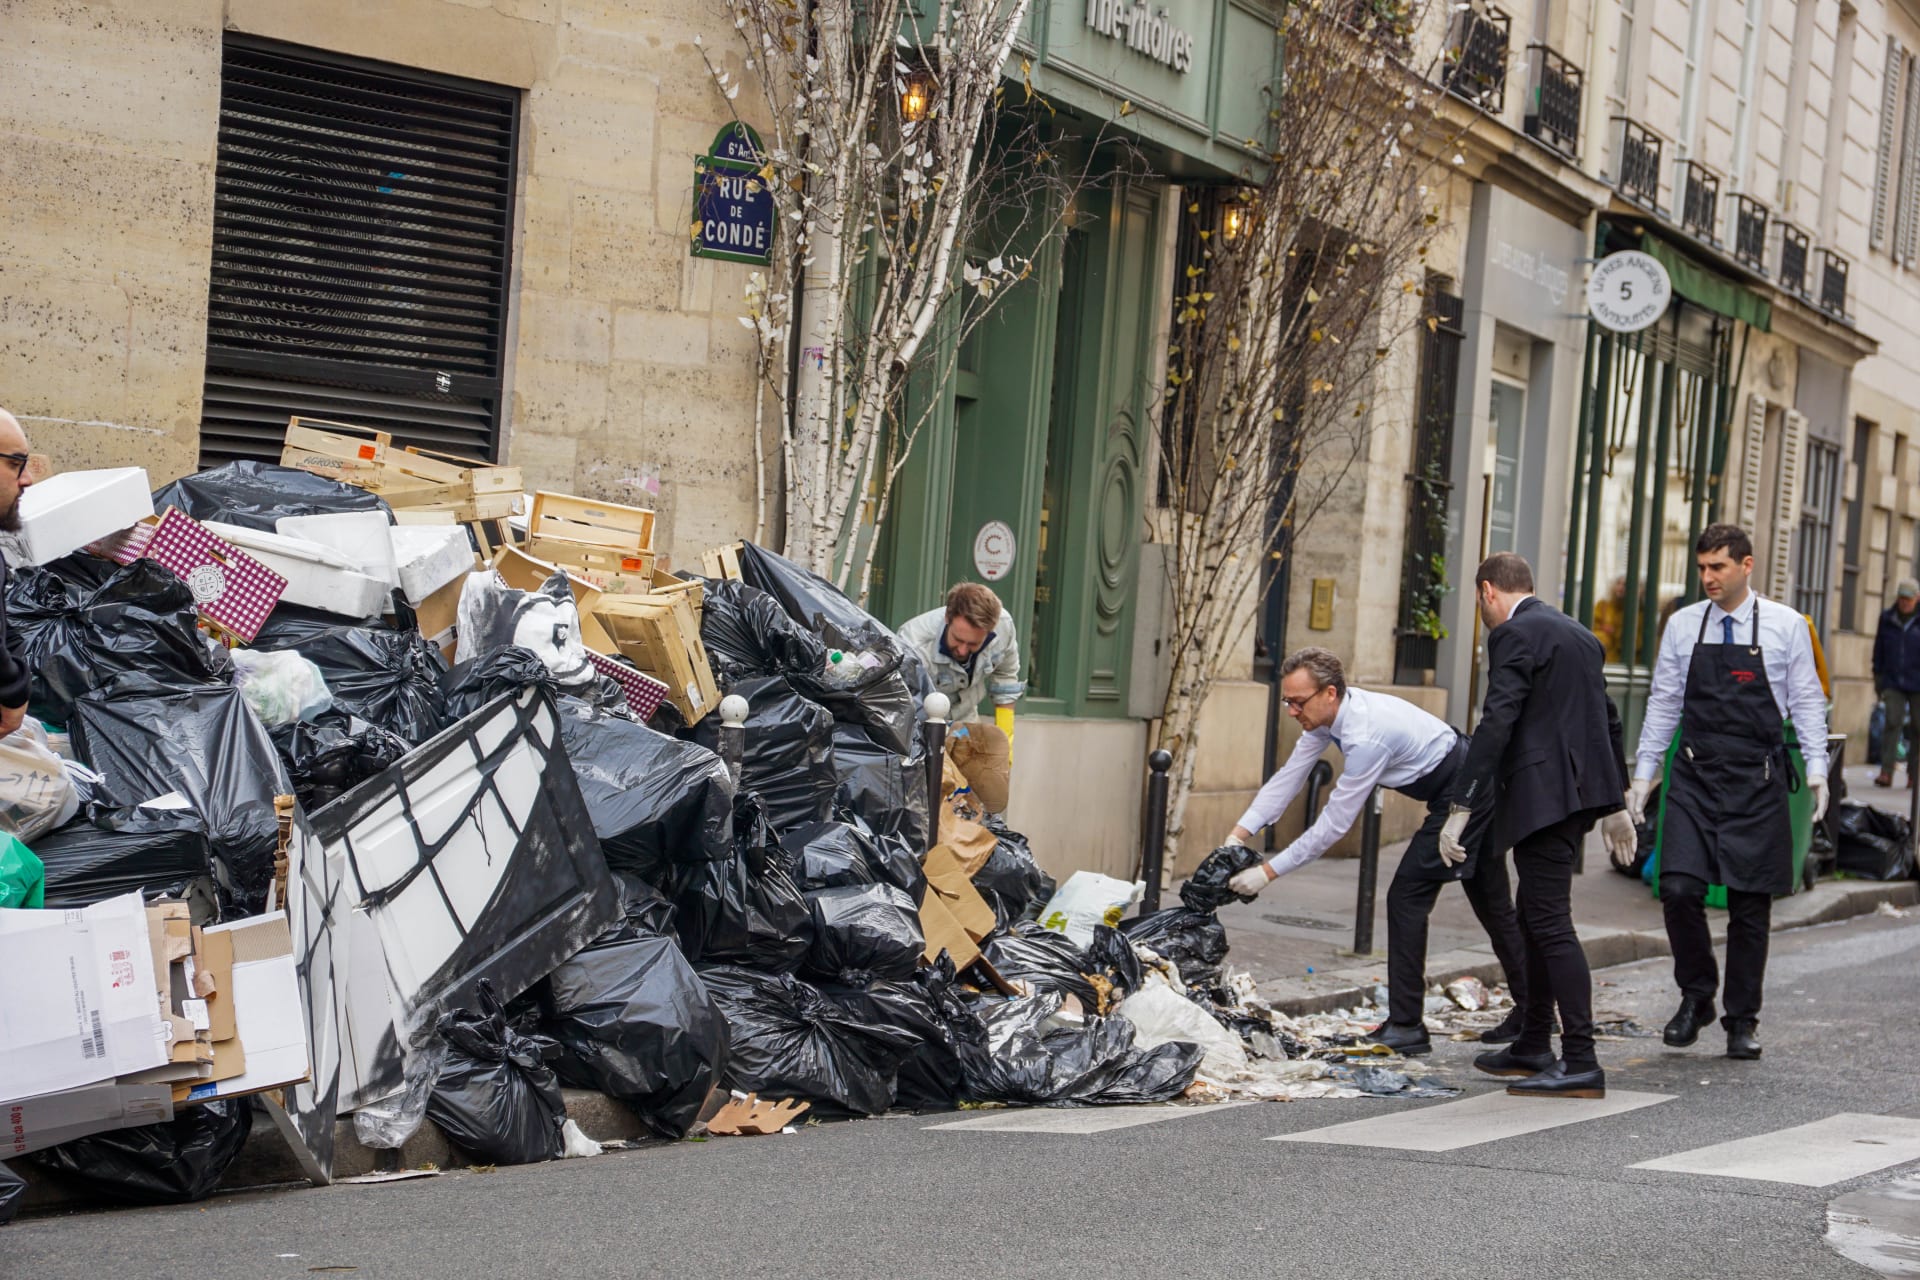 Pařížské ulice zahlcené pytli s odpadem musel mnohdy čistit třeba personál blízkých restaurací, aby si k nim zákazníci vůbec našli cestu.